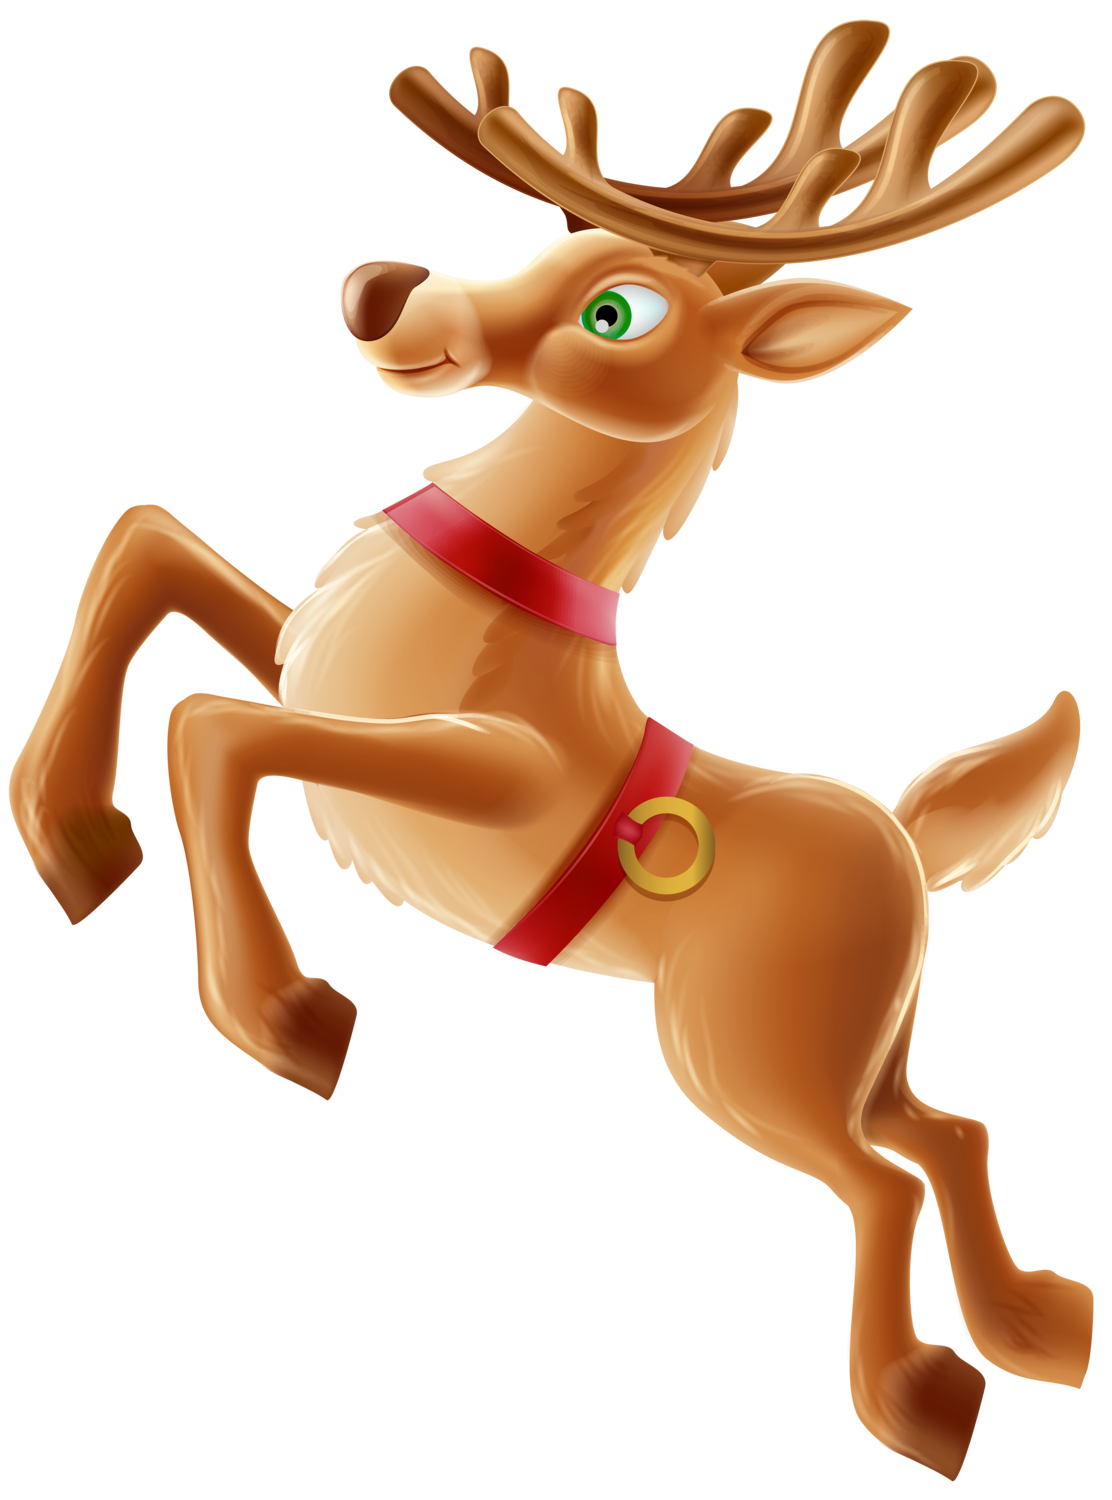 Clipart reindeer ornament antler clipart. Christmas deer at getdrawings